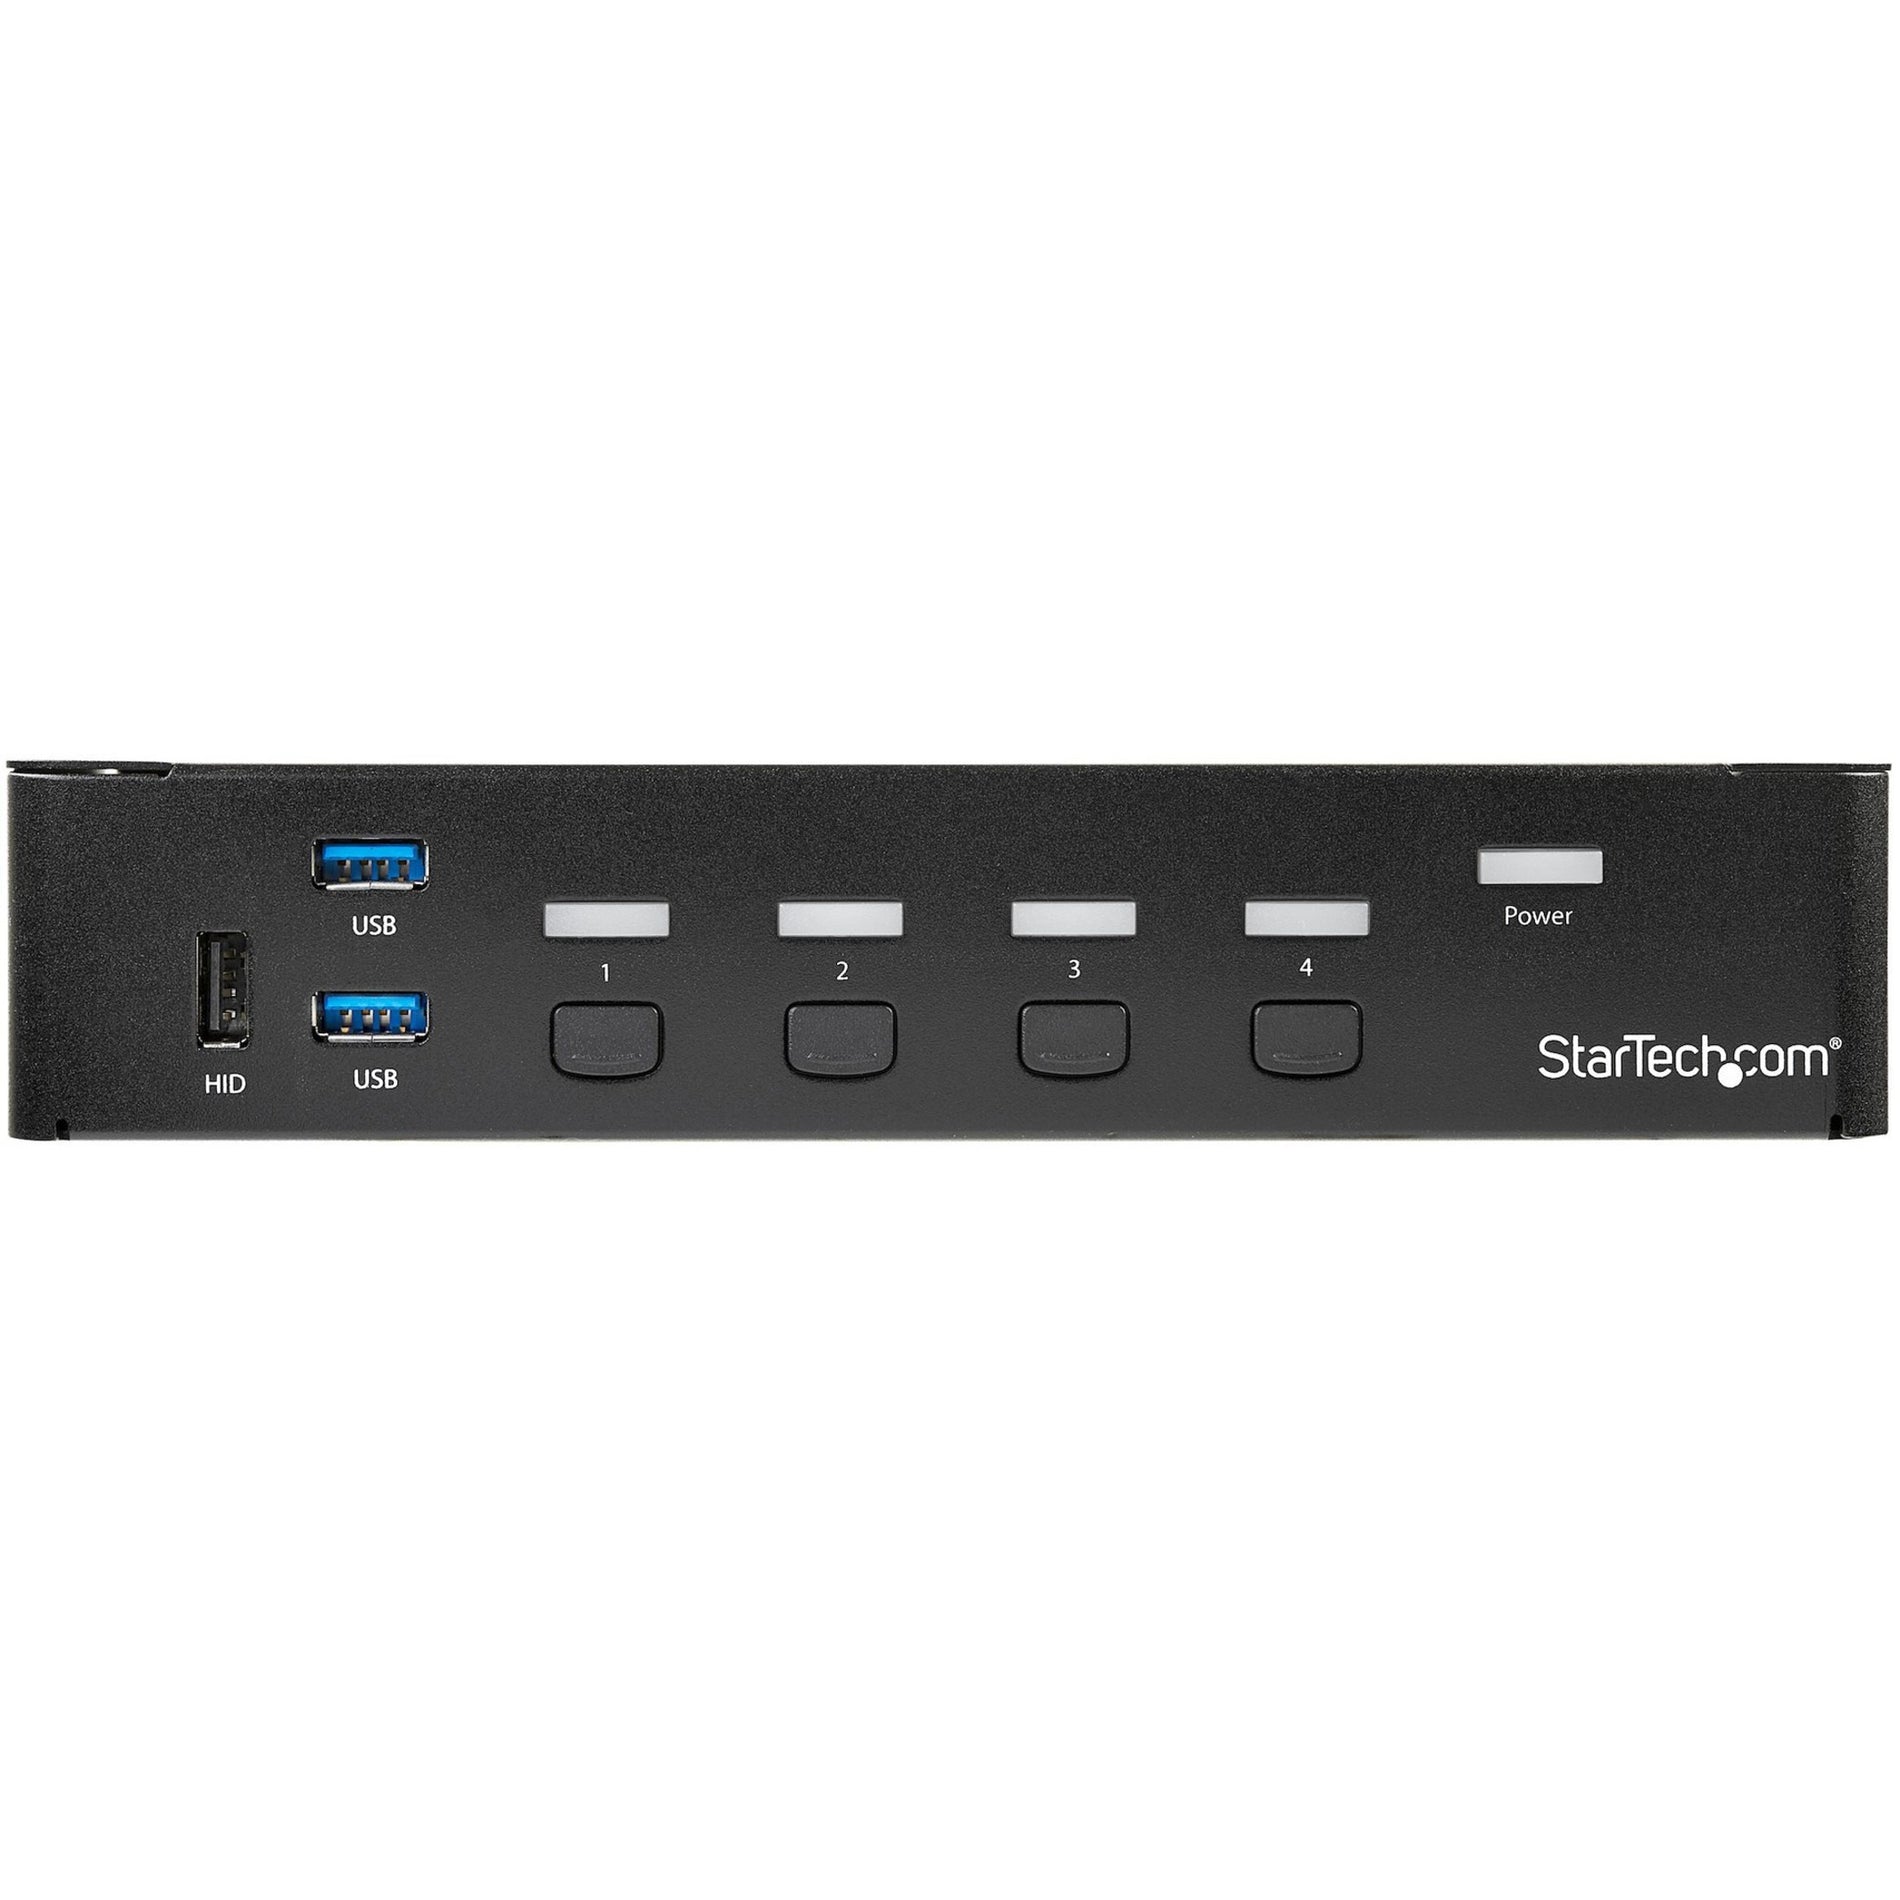 StarTech.com SV431DPU3A2 Commutateur KVM DisplayPort 4 ports - USB 3.0 - 4K Hub USB 3.0 intégré pour périphériques